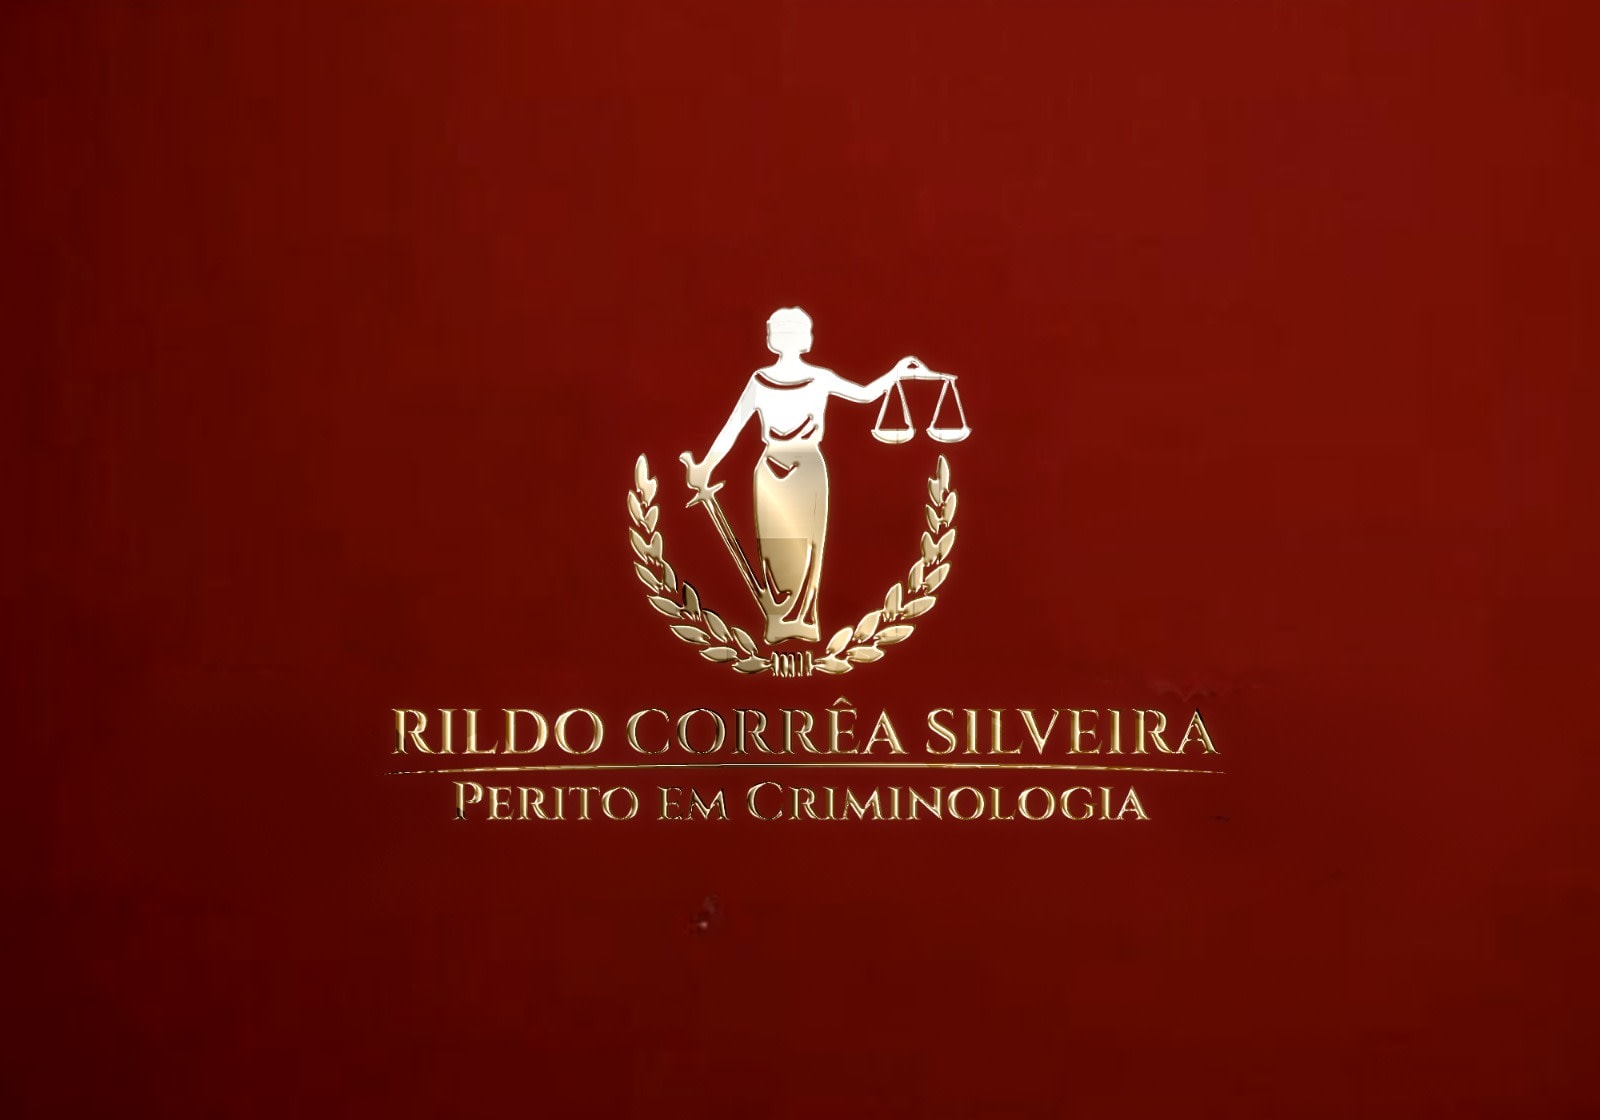 RILDO CORRÊA SILVEIRA - Perito em Criminologia